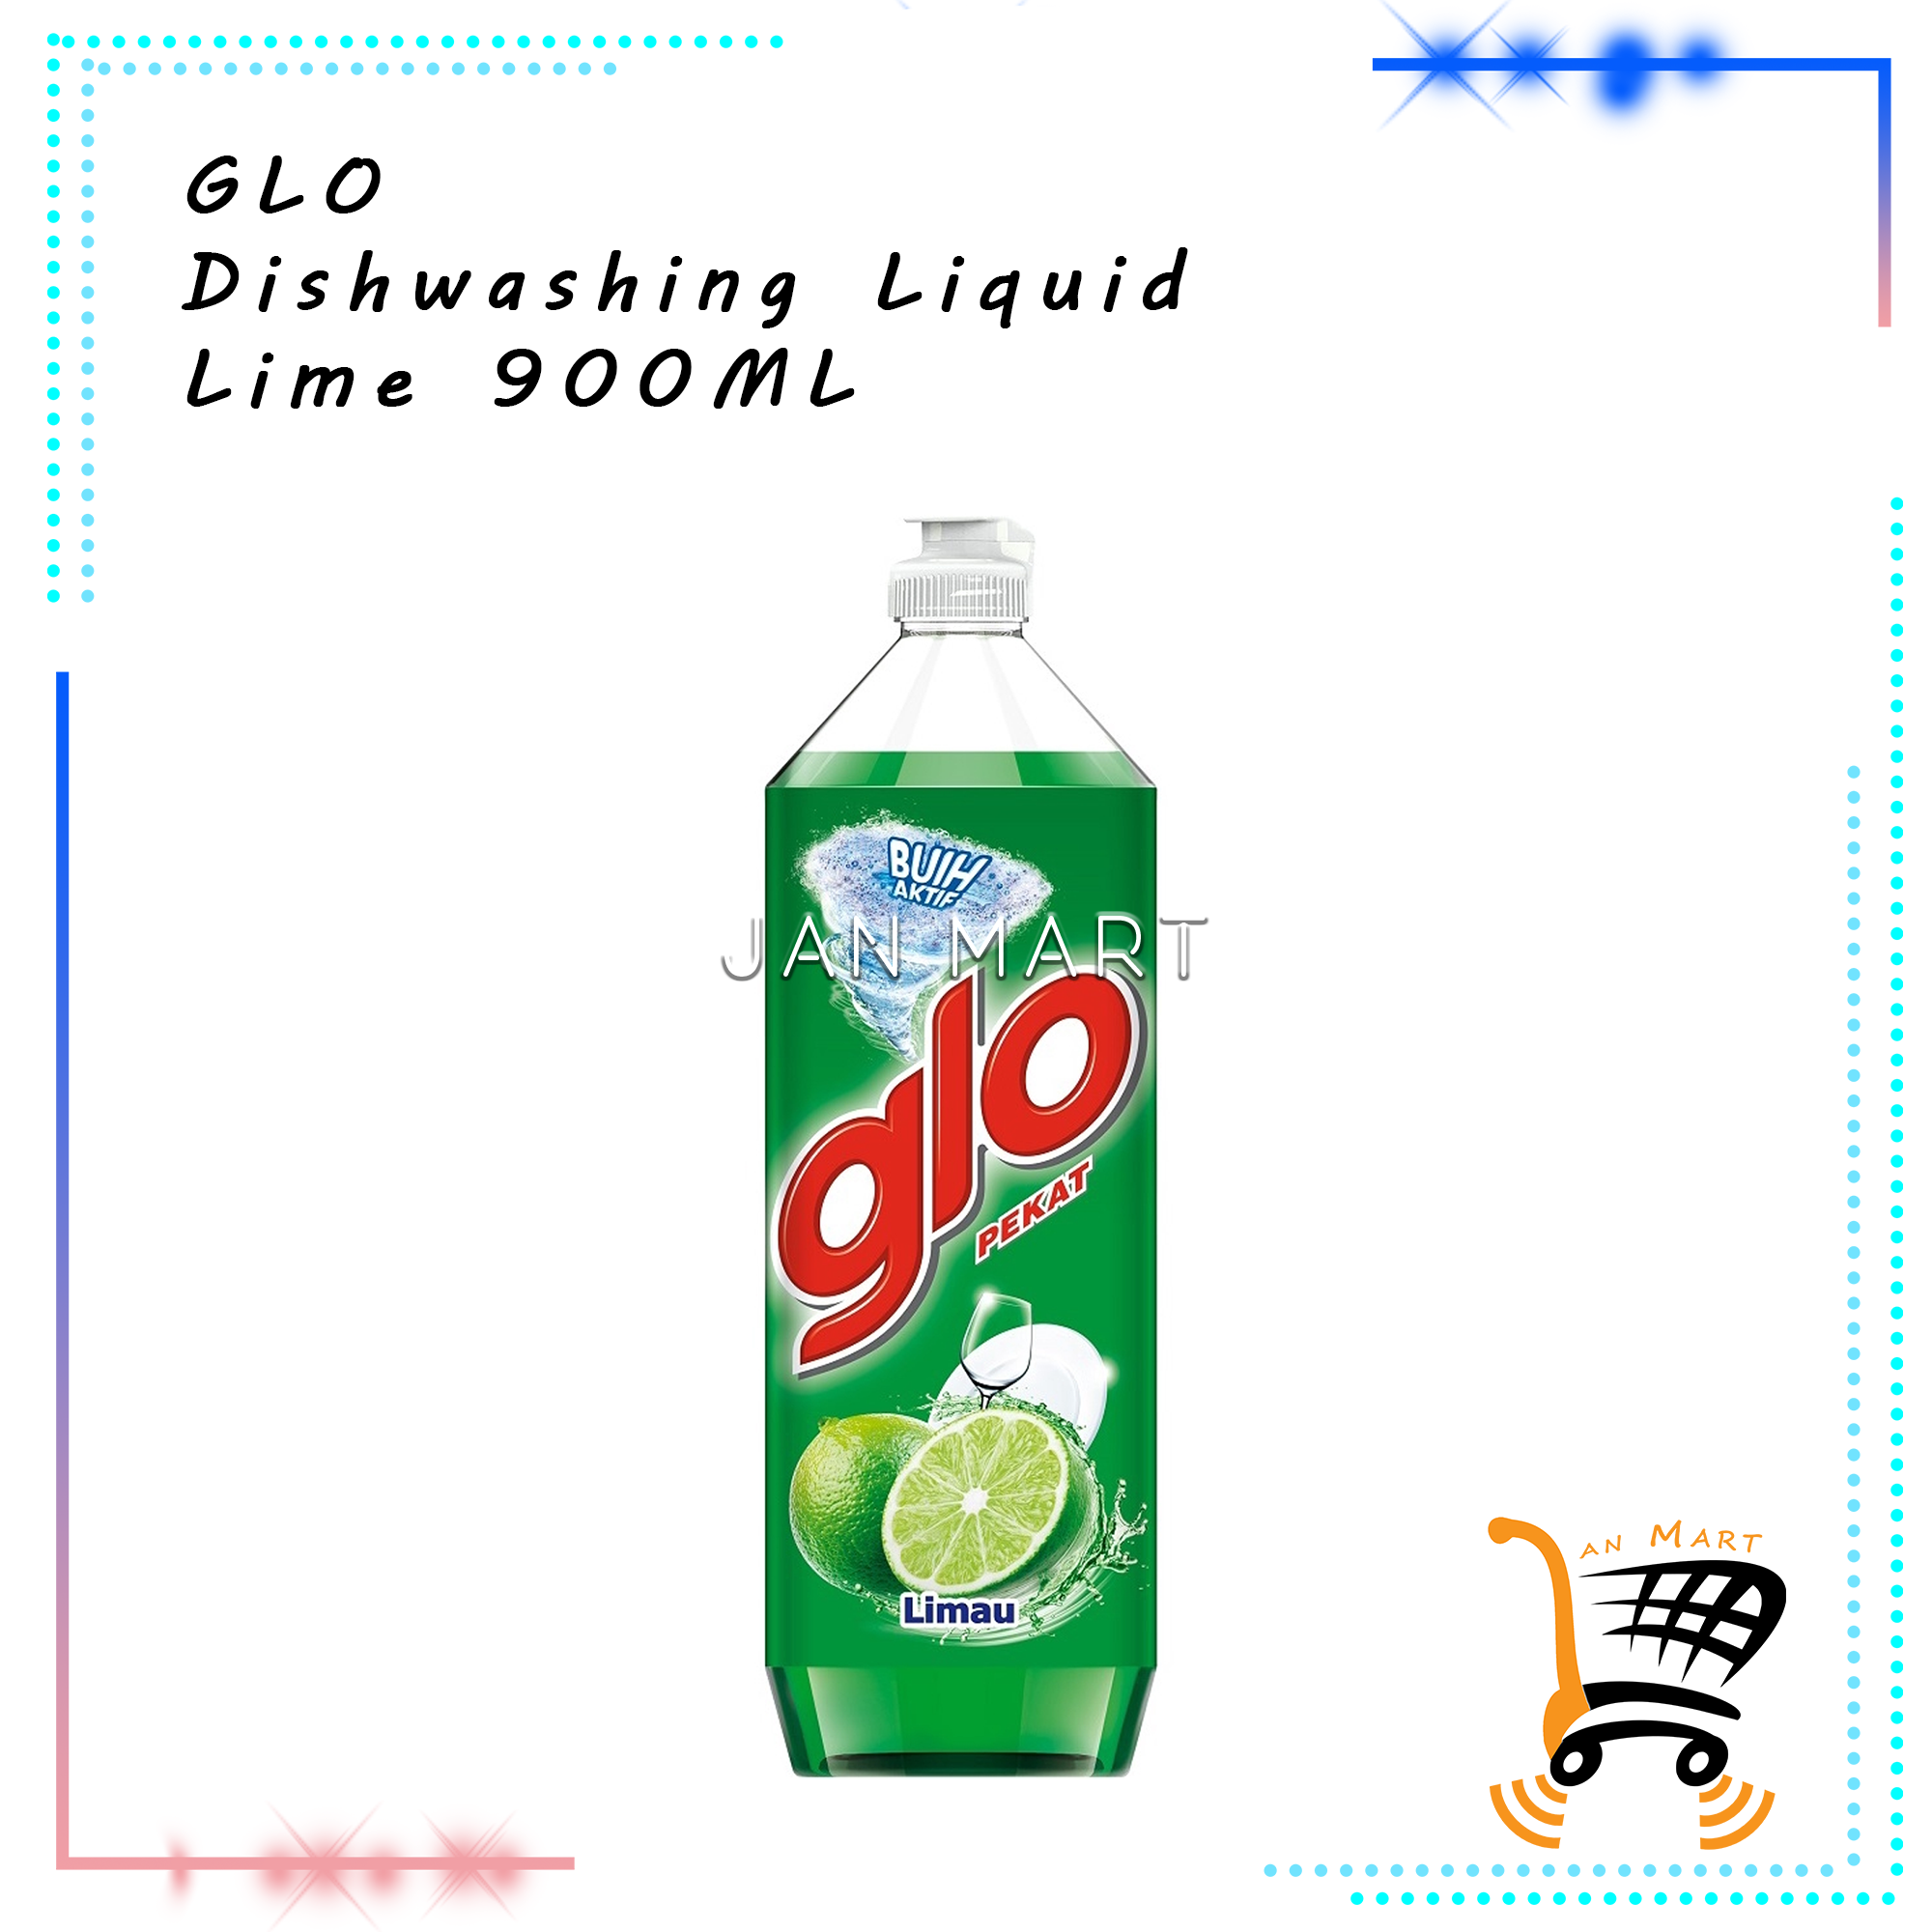 GLO Dishwashing Liquid Lime 900ML